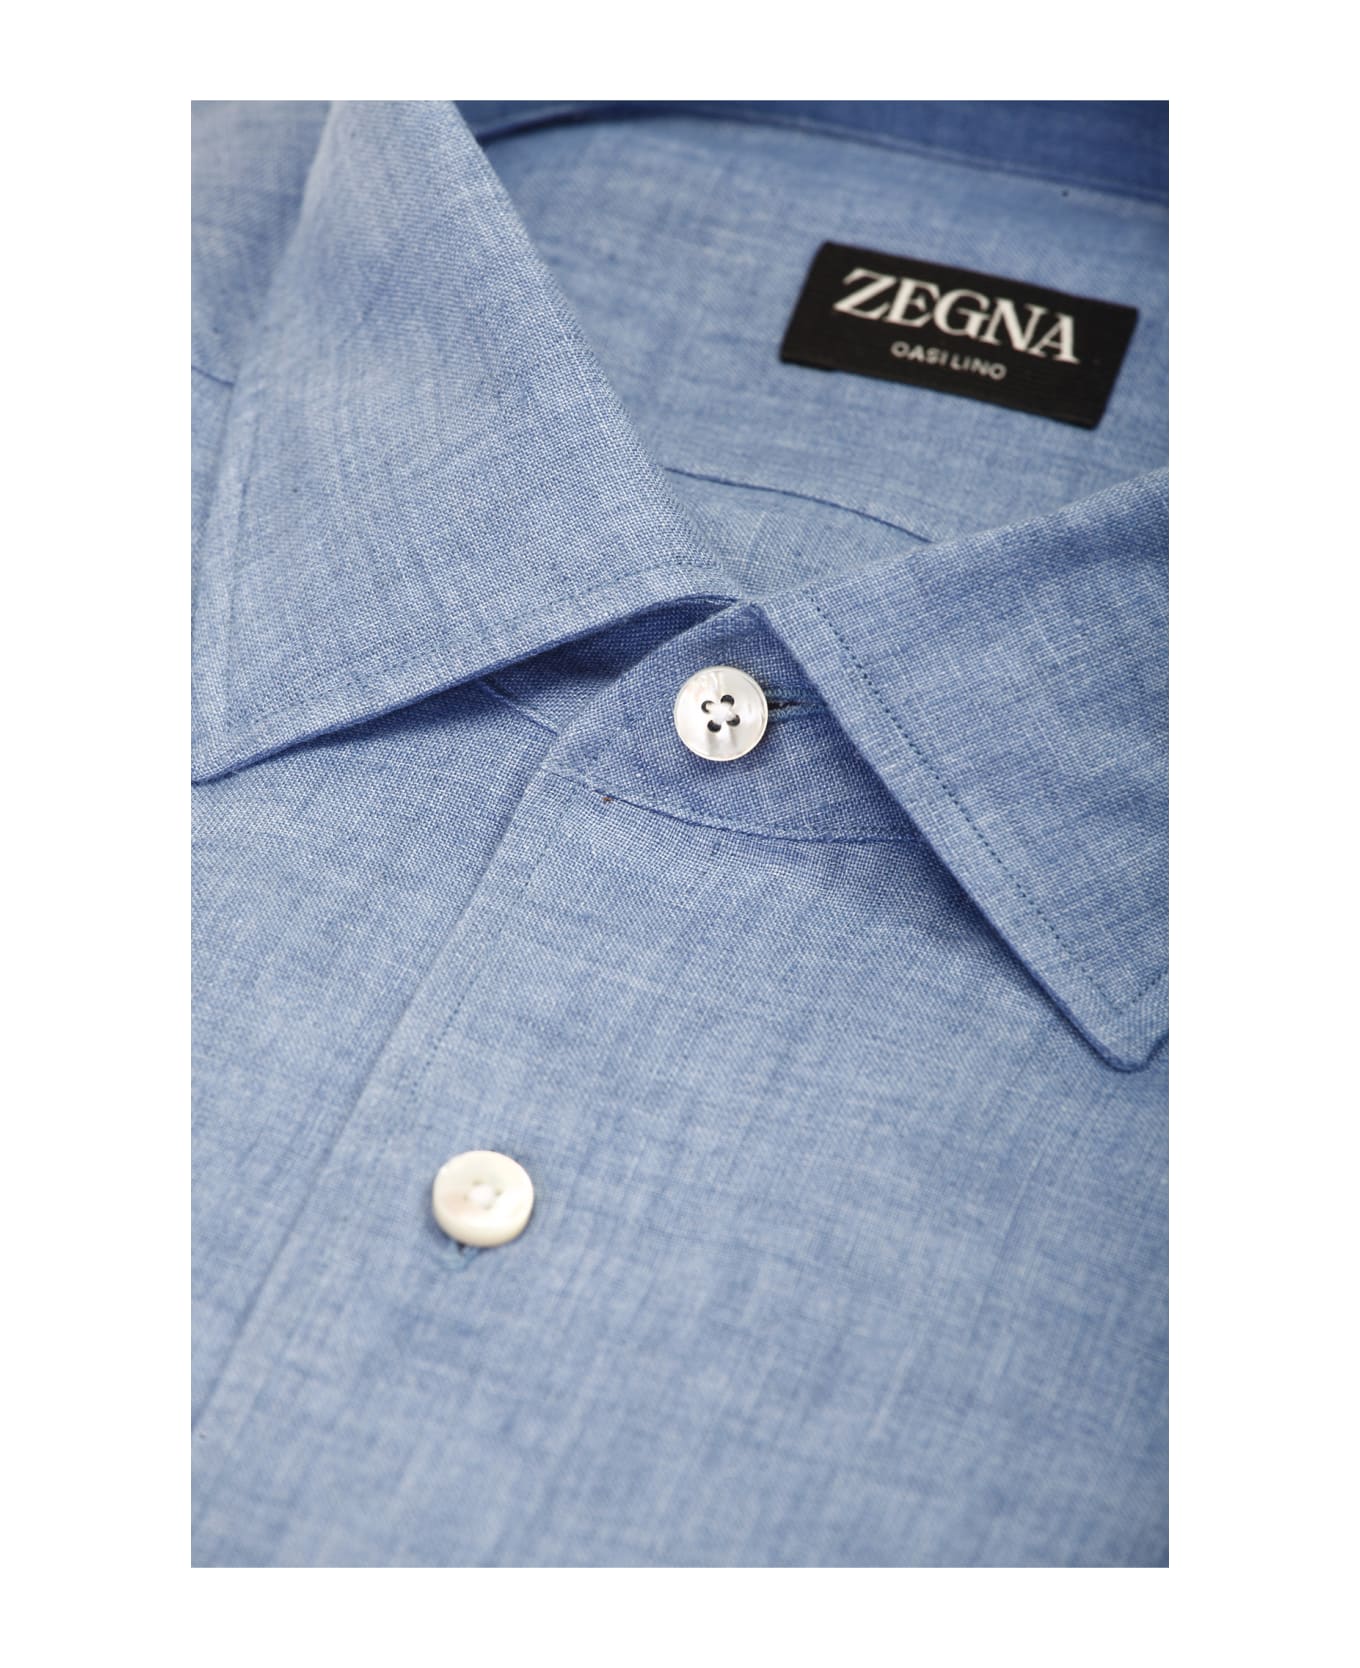 Zegna Shirts Light Blue - Light Blue シャツ